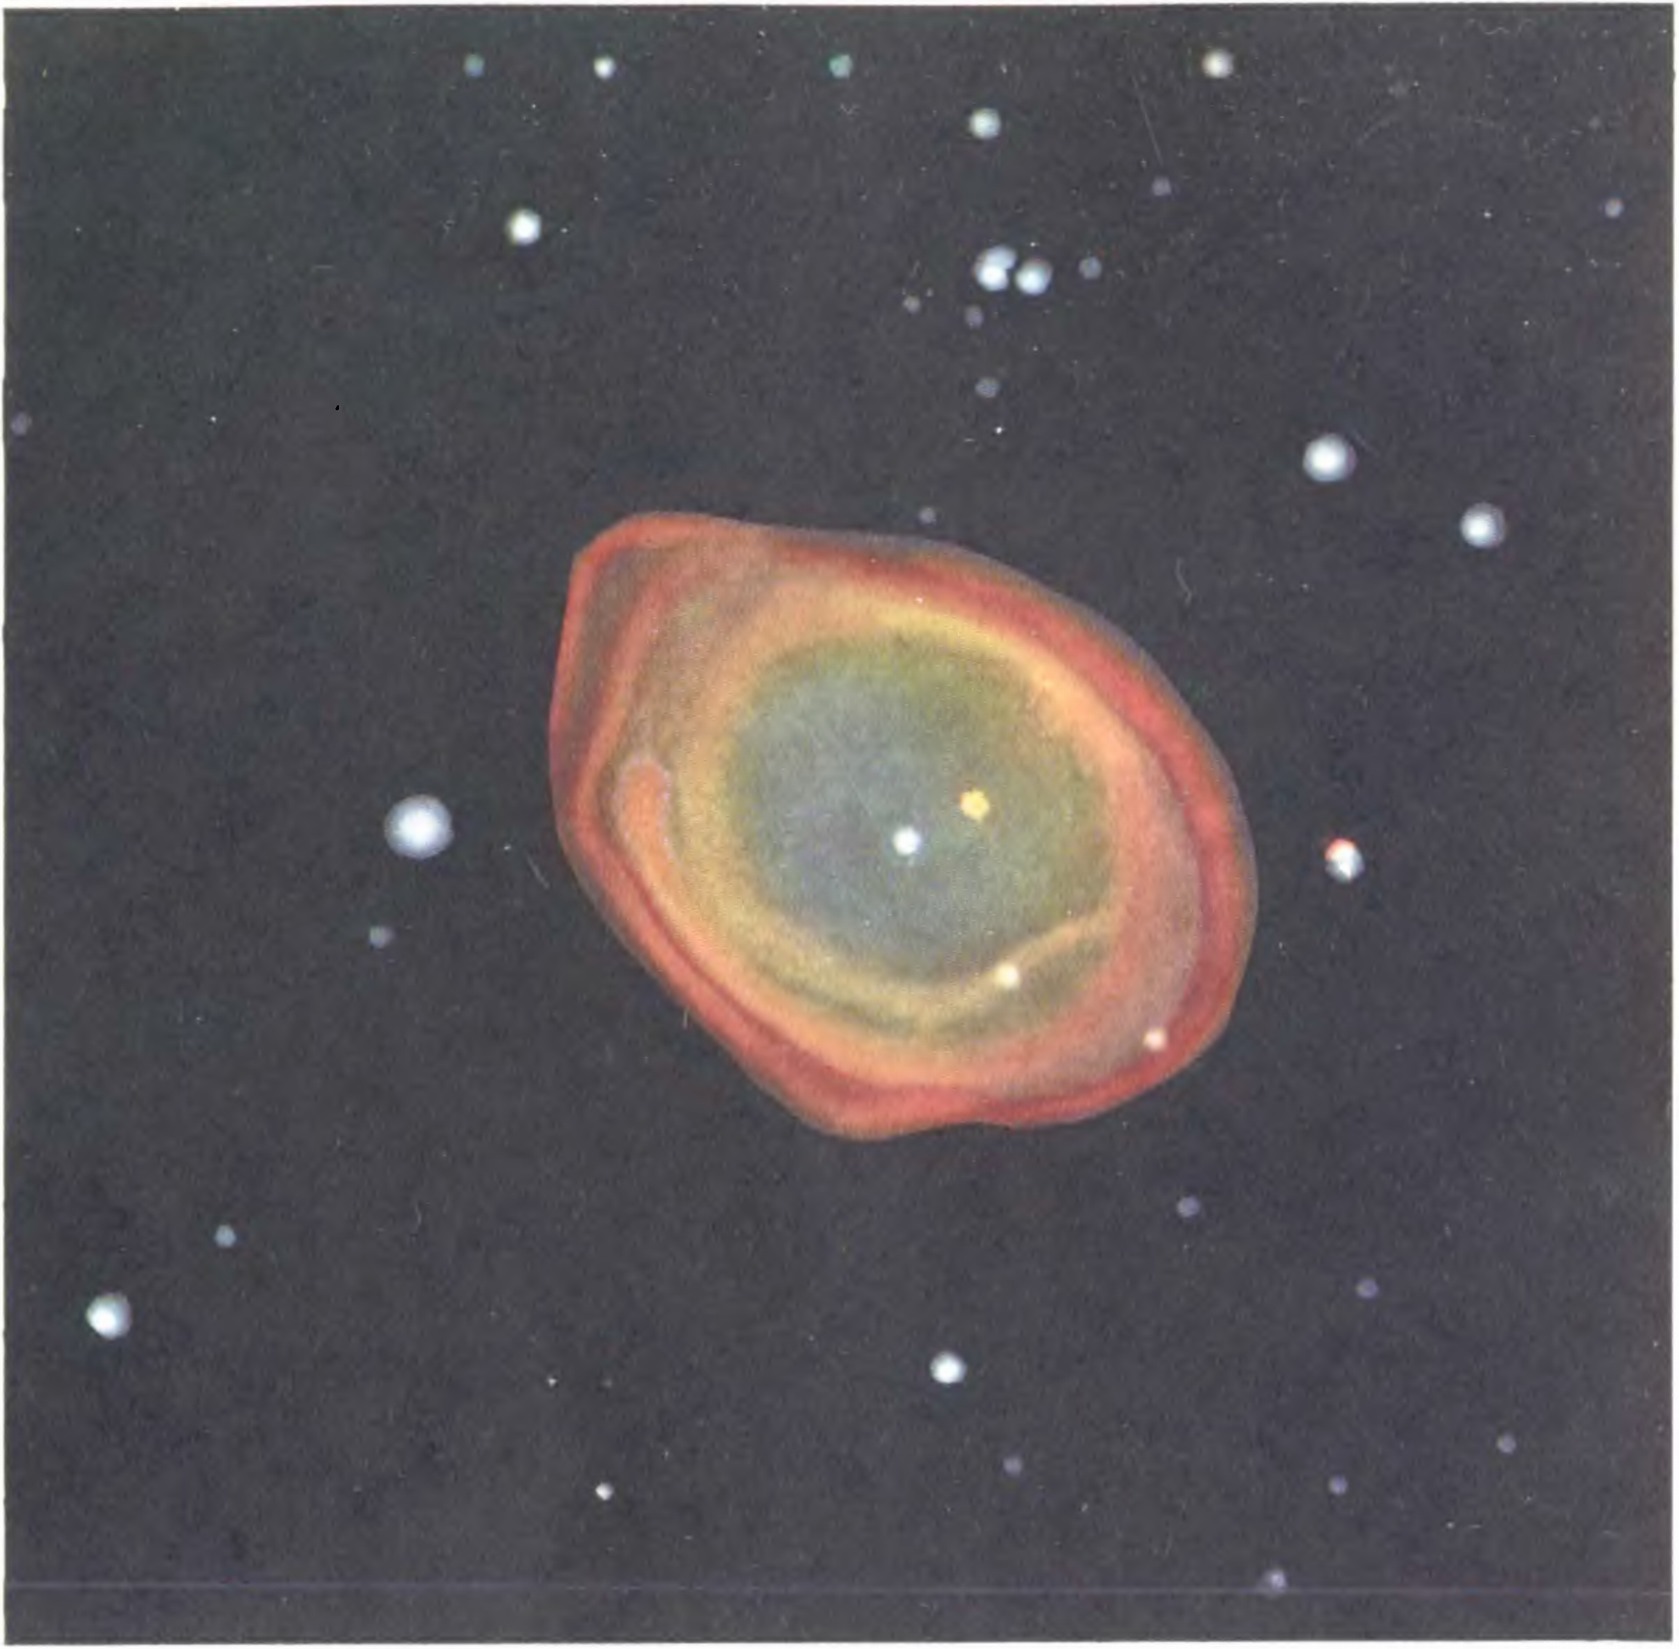 Цветная фотография планетарной туманности в созвездии Лиры, полученная Миллером на том же телескопе